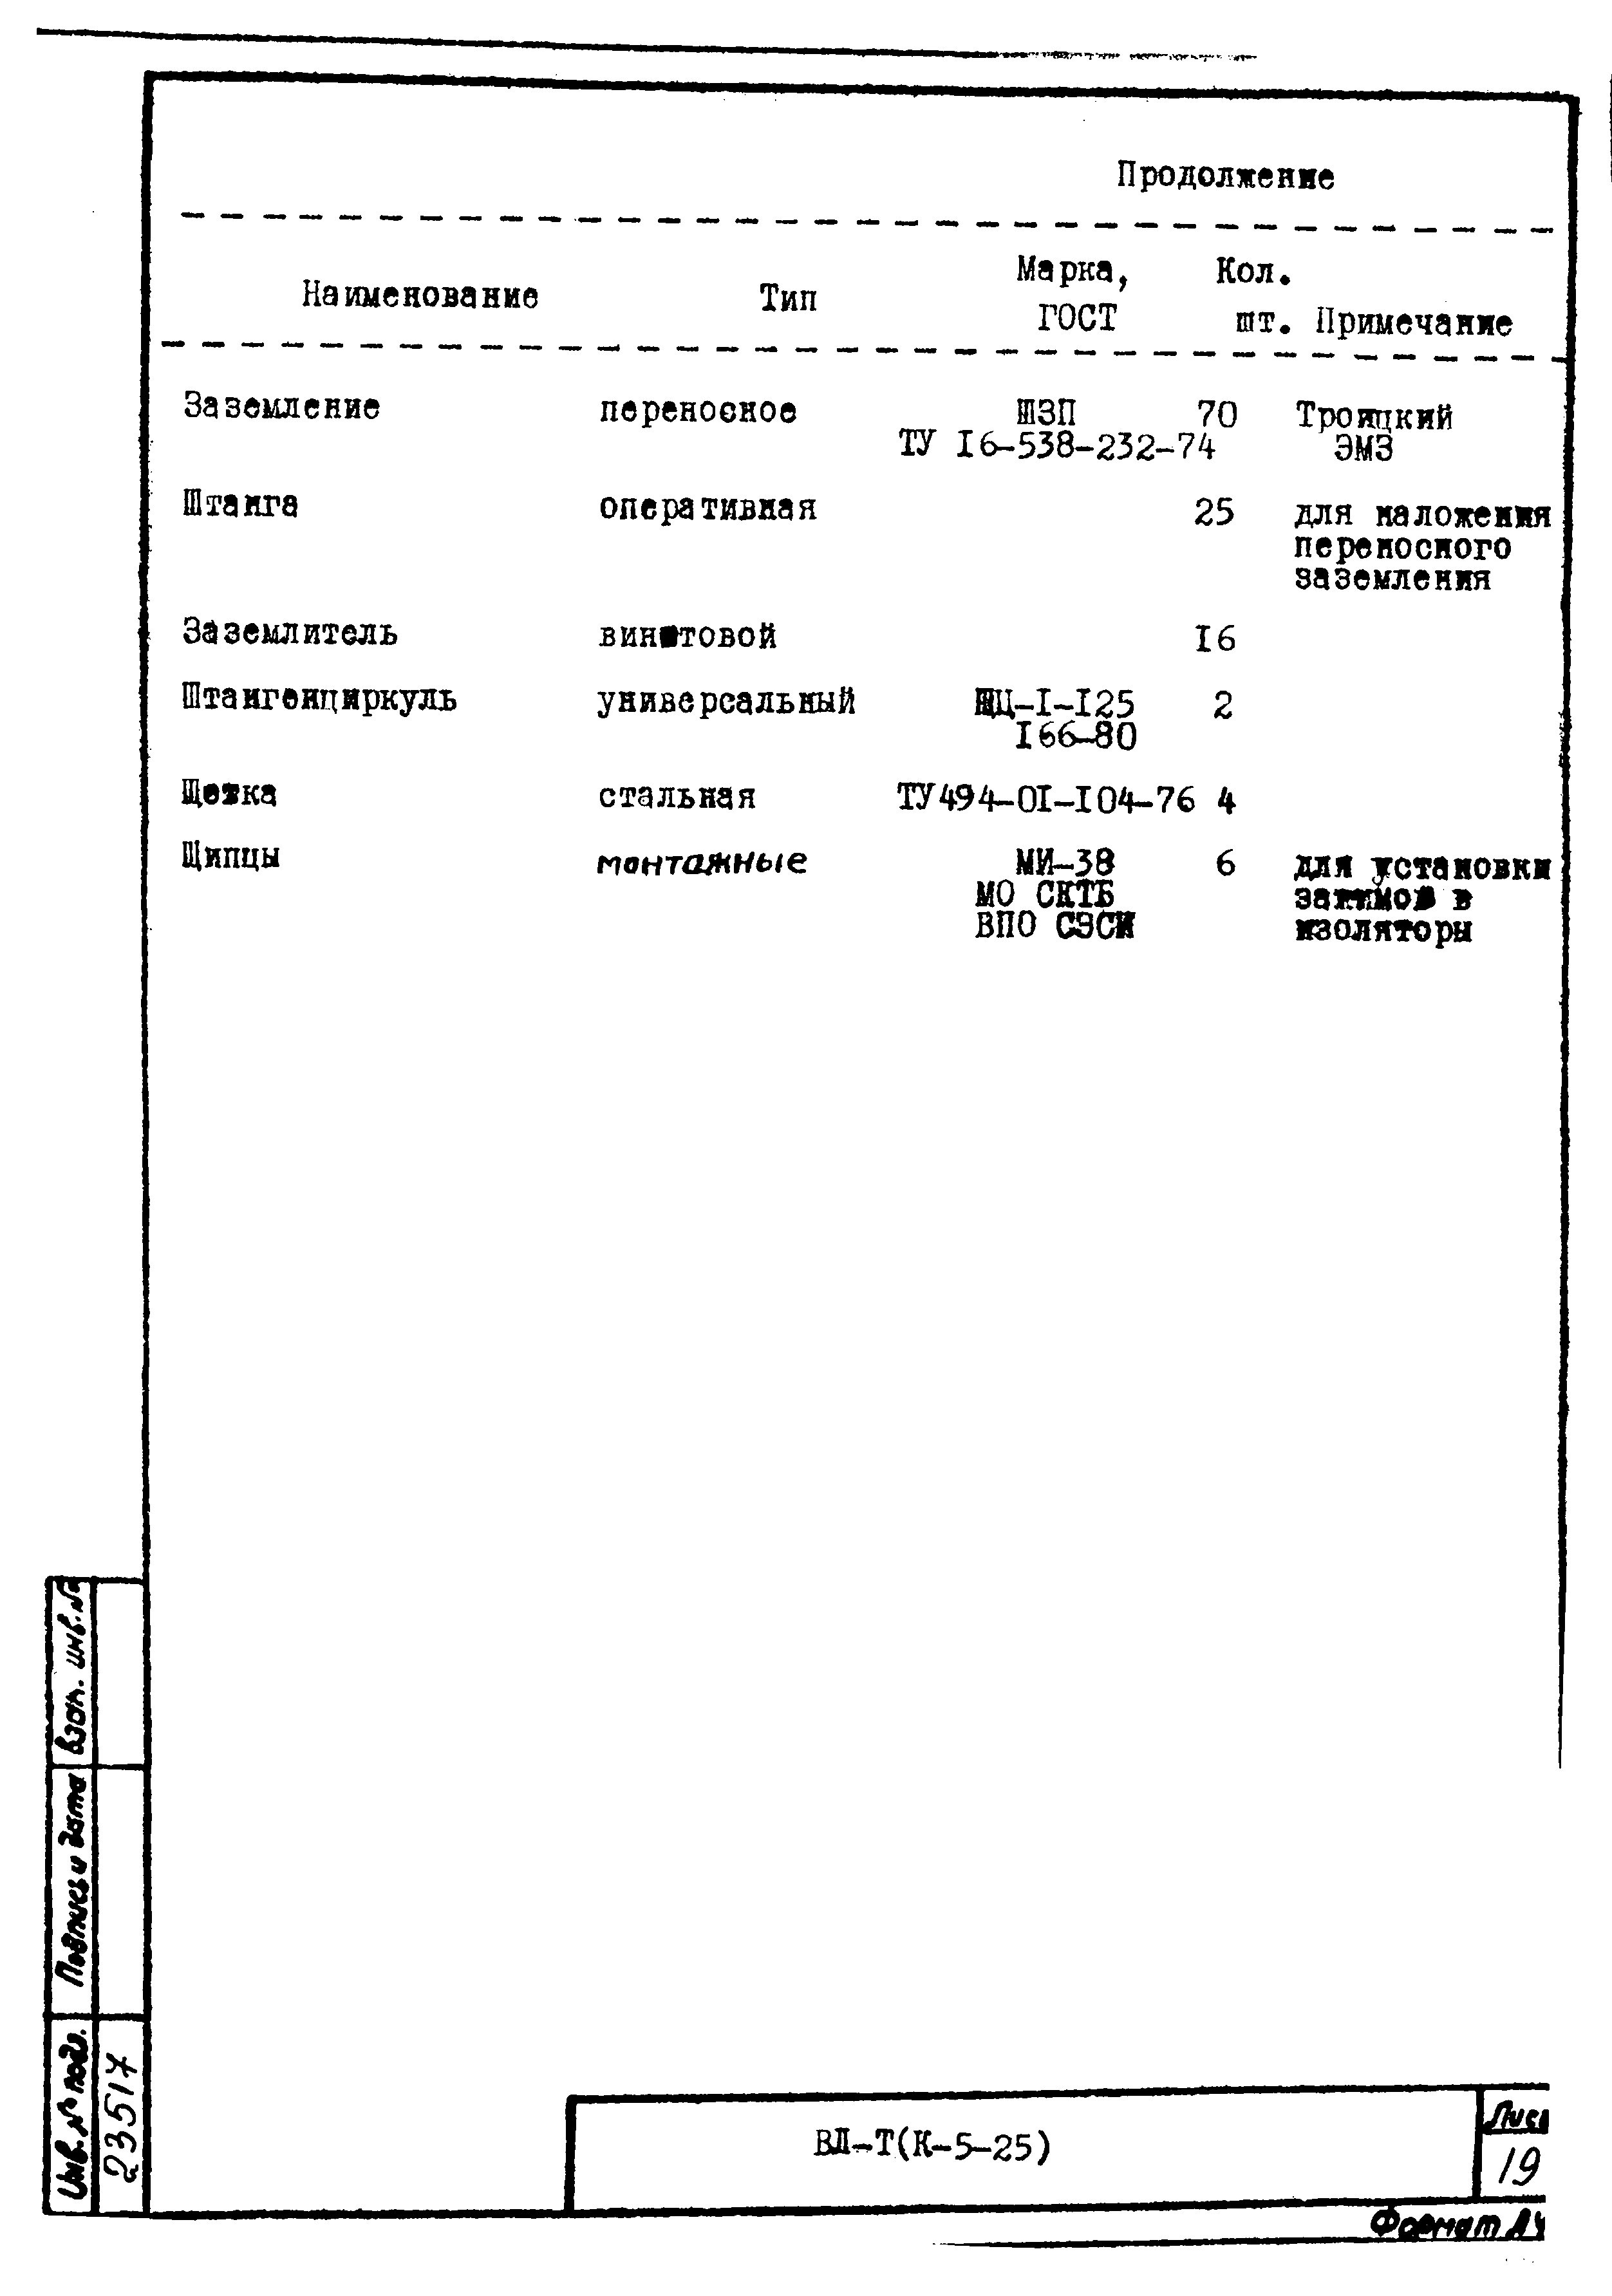 Технологическая карта К-5-25-22